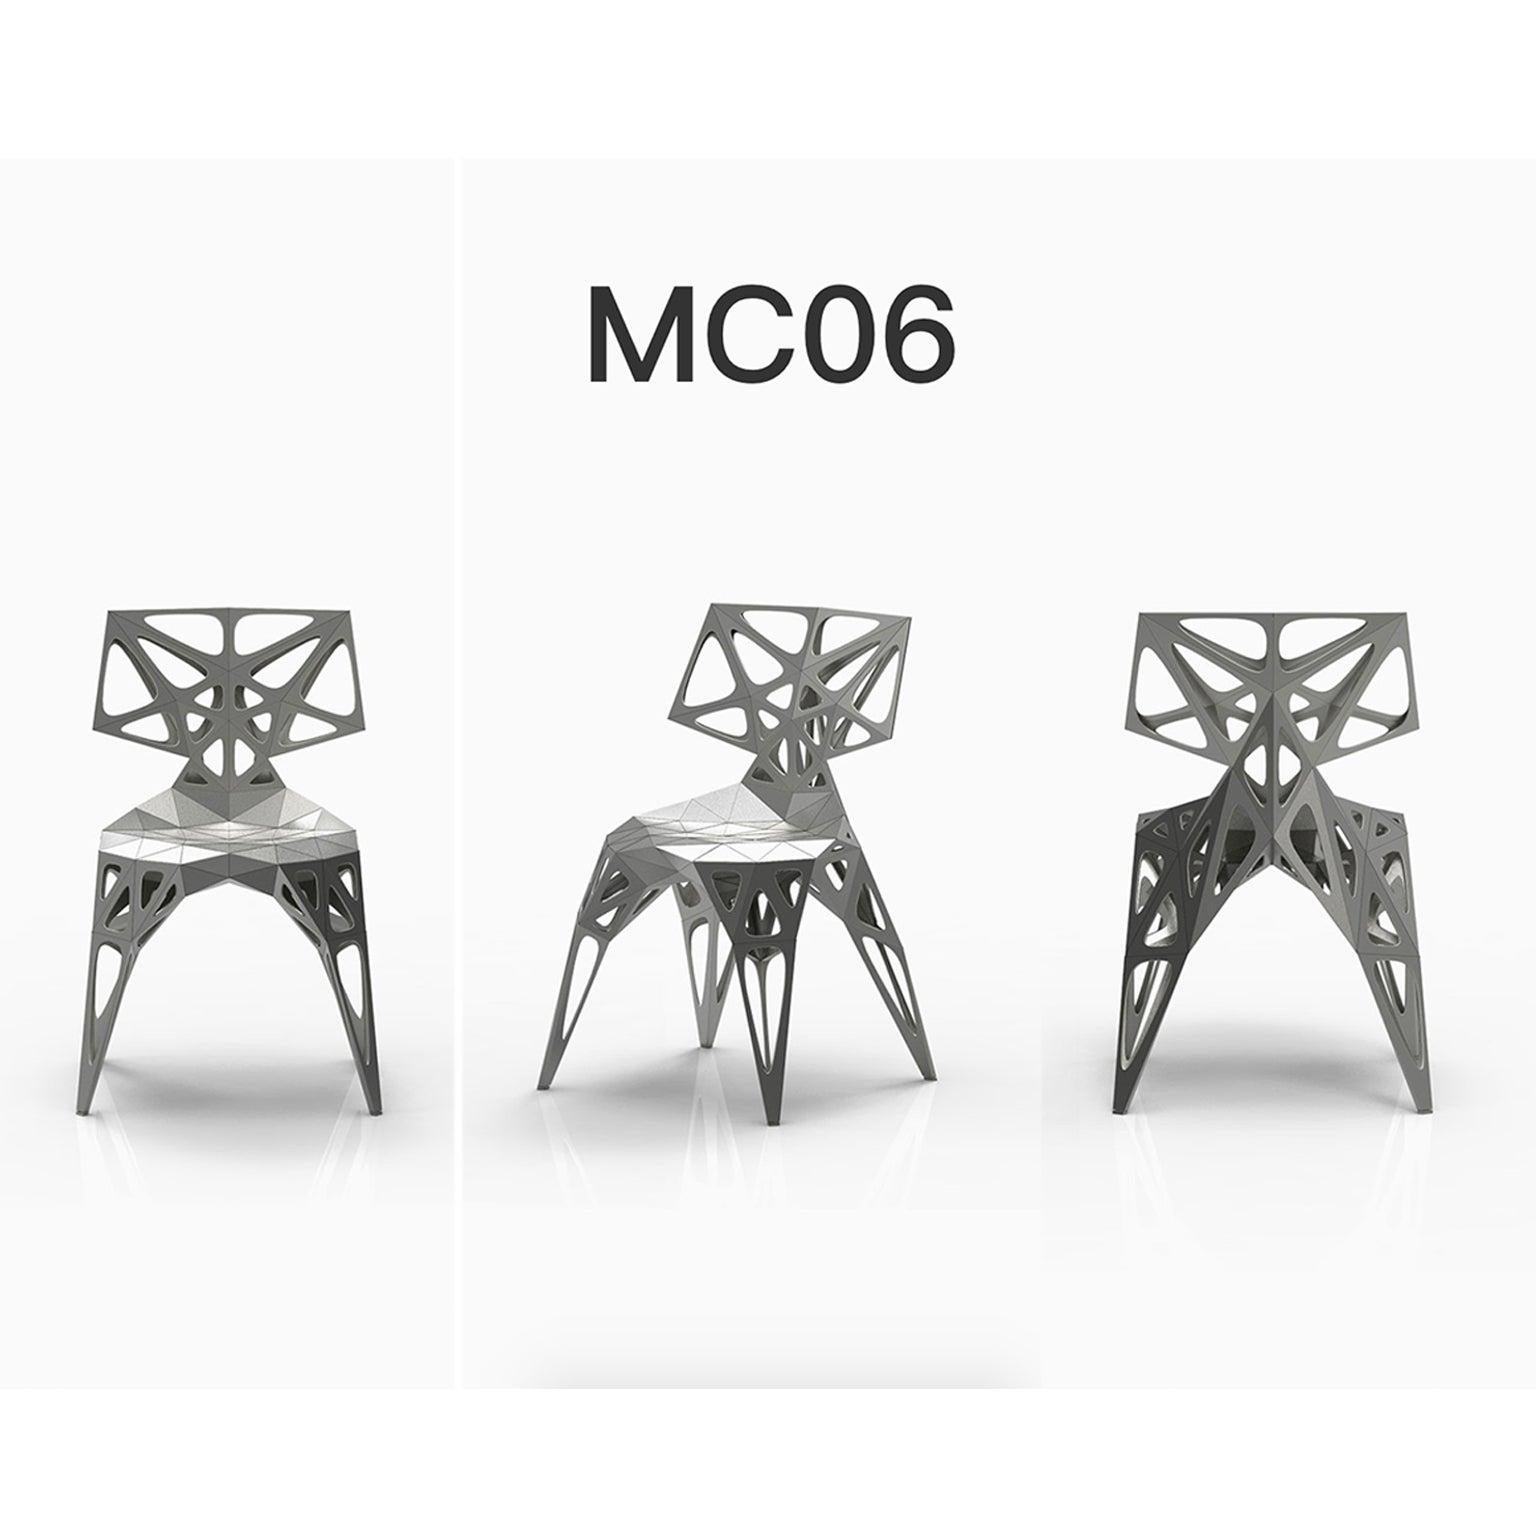 Draußen und drinnen
3 offizielle Typen Stühle / verfügbar
Solide
Dots
Rahmen
2 Farben offiziell / verfügbar / Ausführung in poliert/matt
Schwarz
Silber

Der Möbeldesigner Zhoujie Zhang ist bekannt für die Integration von automatisiertem